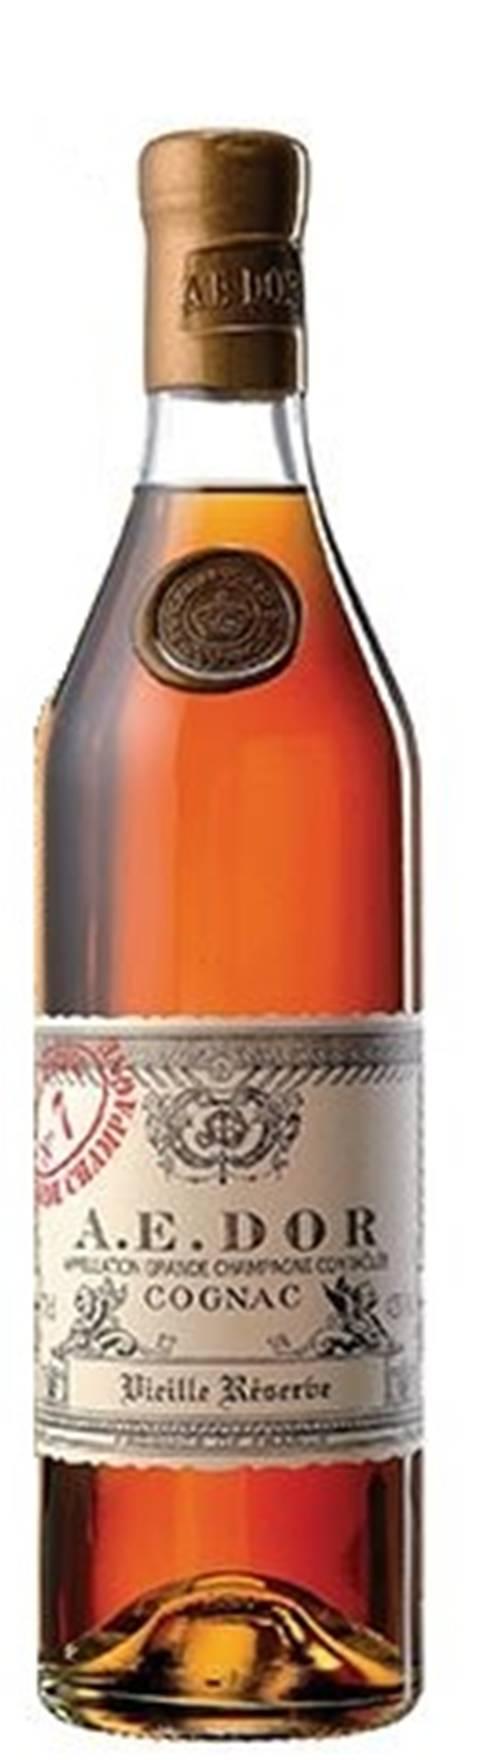 COGNAC GRANDE CHAMPAGNE N 7 Jarnac Cru Grande Champagne Minimo 45 anni in botti di quercia francese.